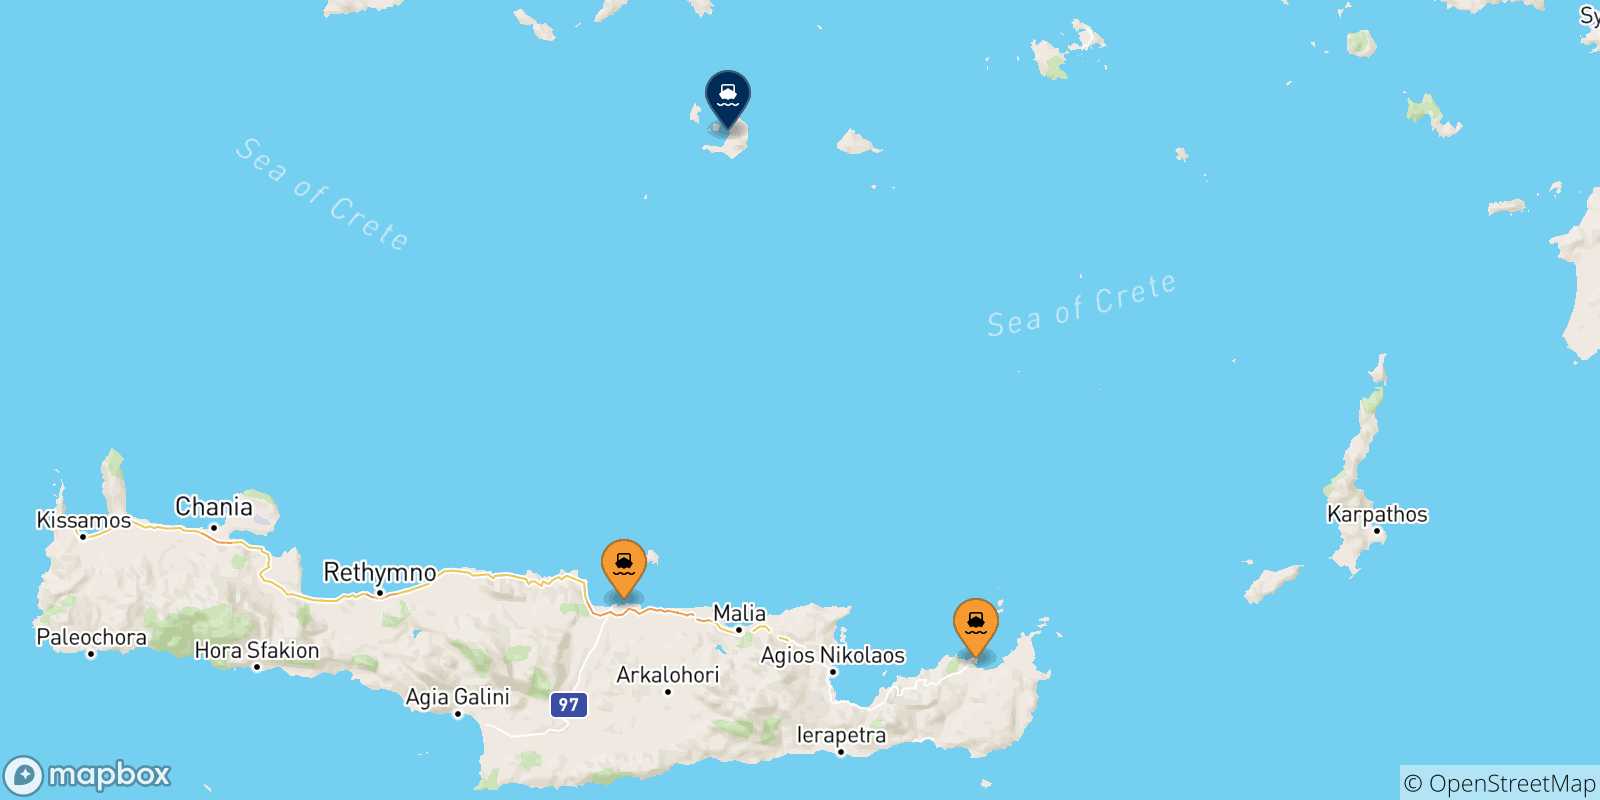 Mappa delle possibili rotte tra Creta e Santorini